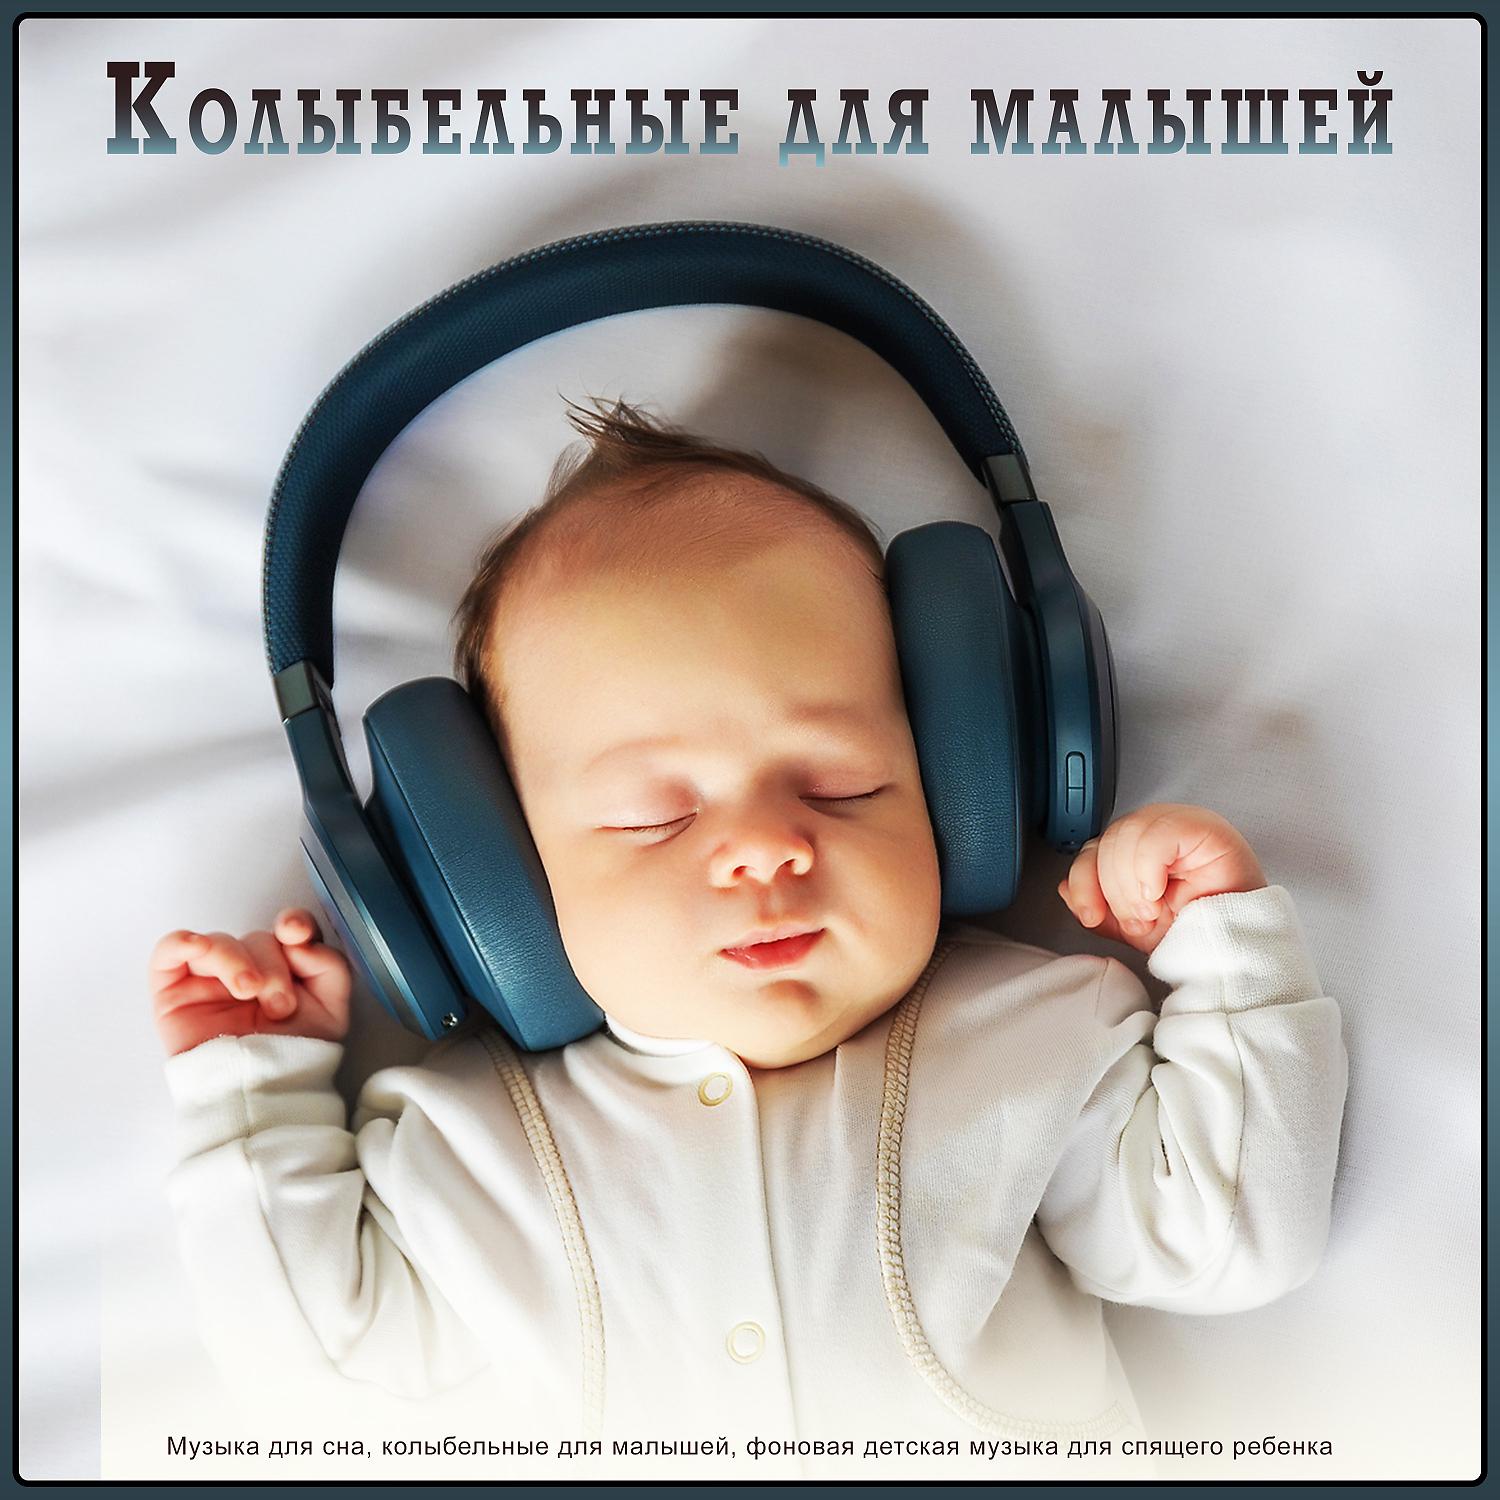 Музыка для засыпания в детском. Музыка для сна младенца. Музыка для сна для малышей. Мелодии для засыпания малышей. Колыбельная для малышей успокаивающая.